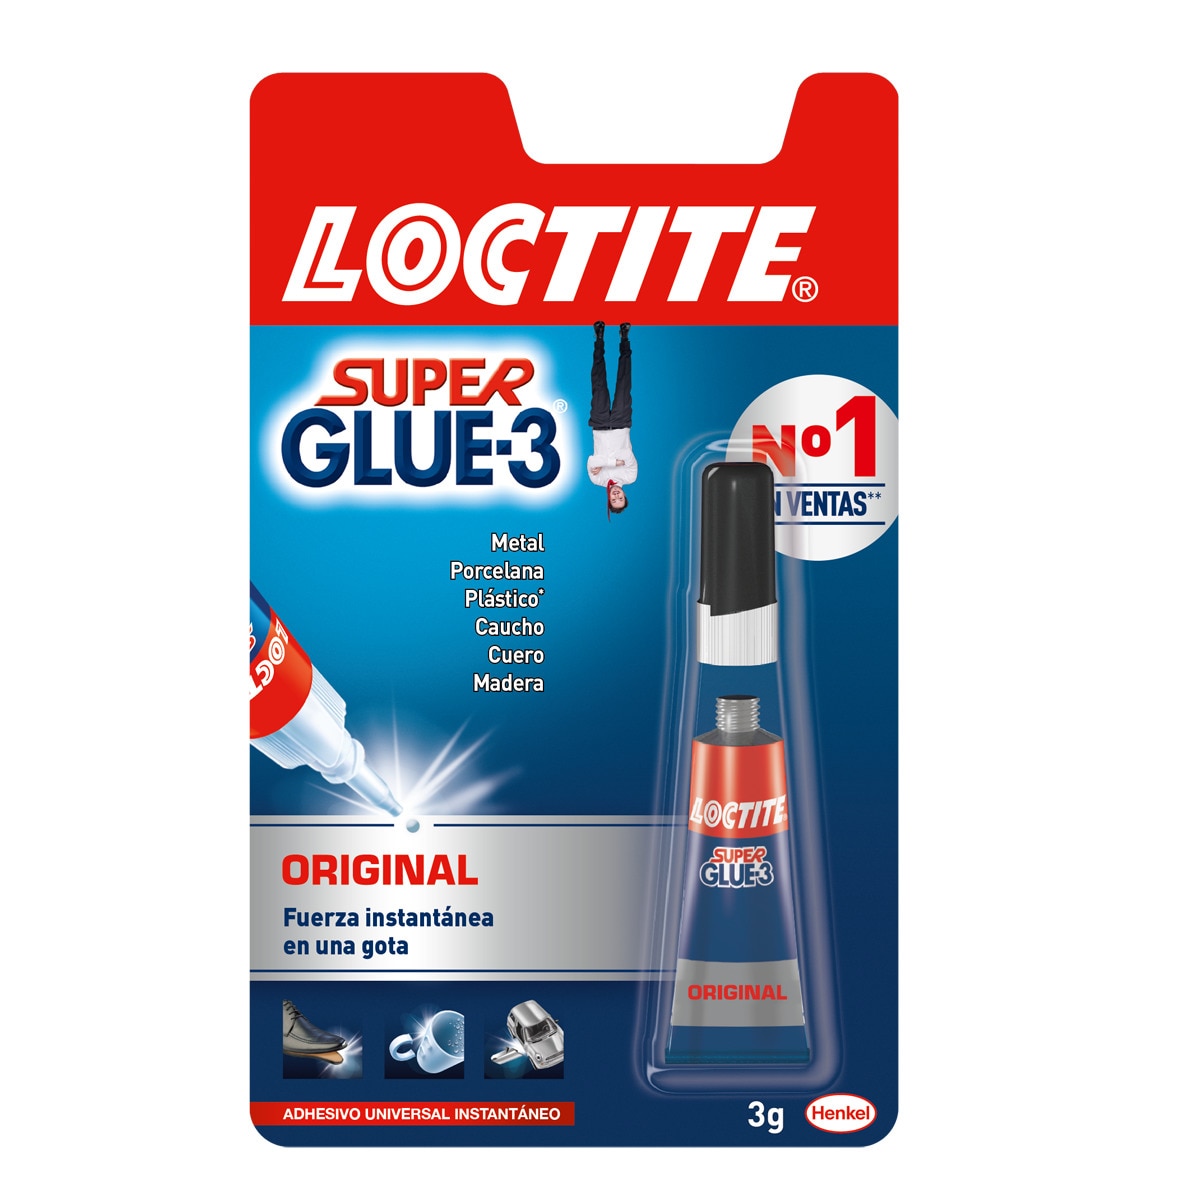 Super Glue-3 Colagem Universal Transparente e Instantânea 1 x 3 g Loctite